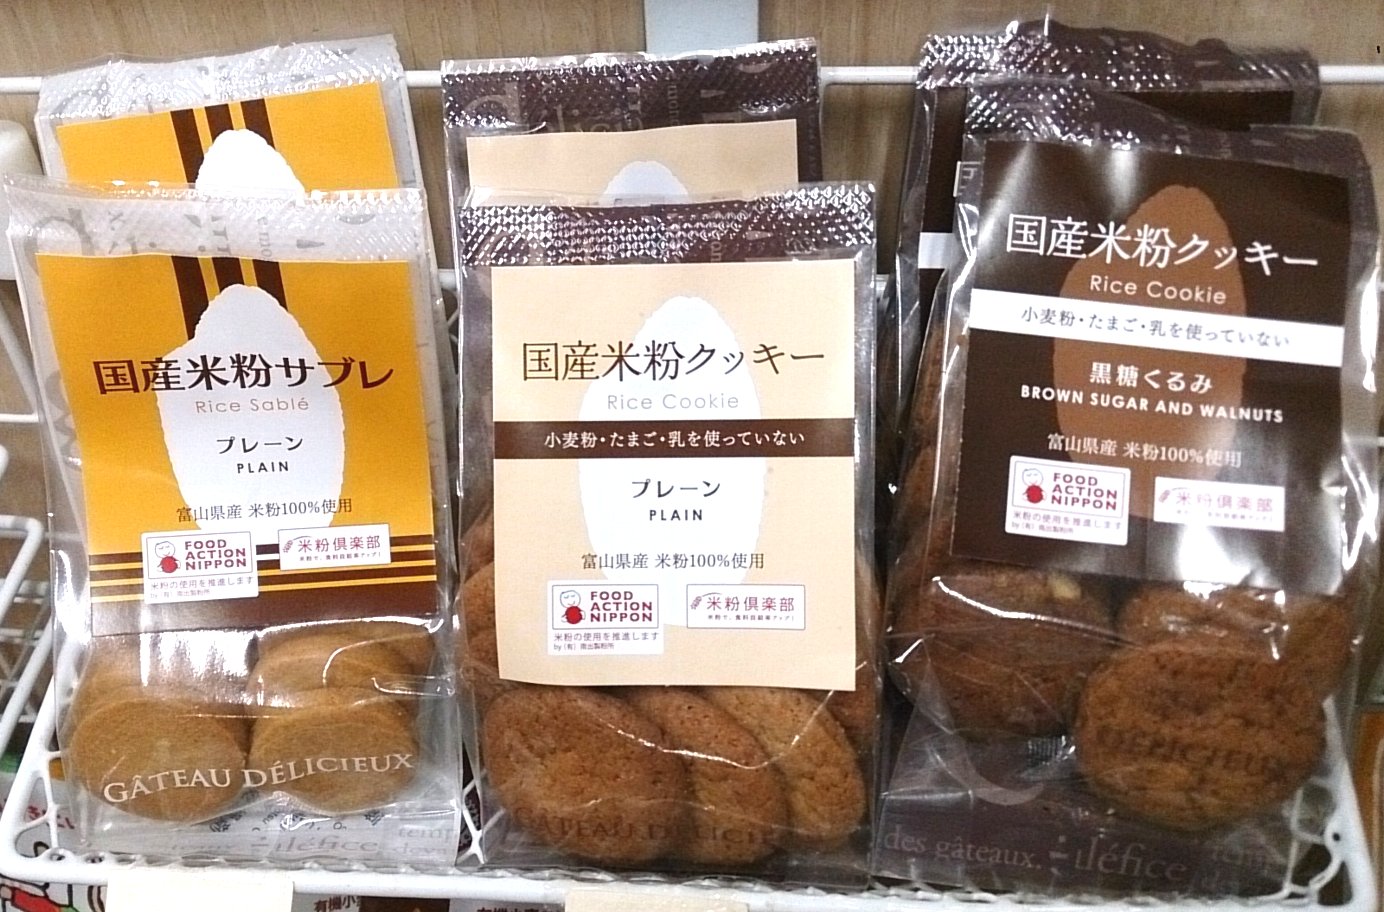 グルテンフリー おいしい米粉クッキー入荷しました 腸とお肌の専門店 大阪市淀川区東三国のさくら薬品